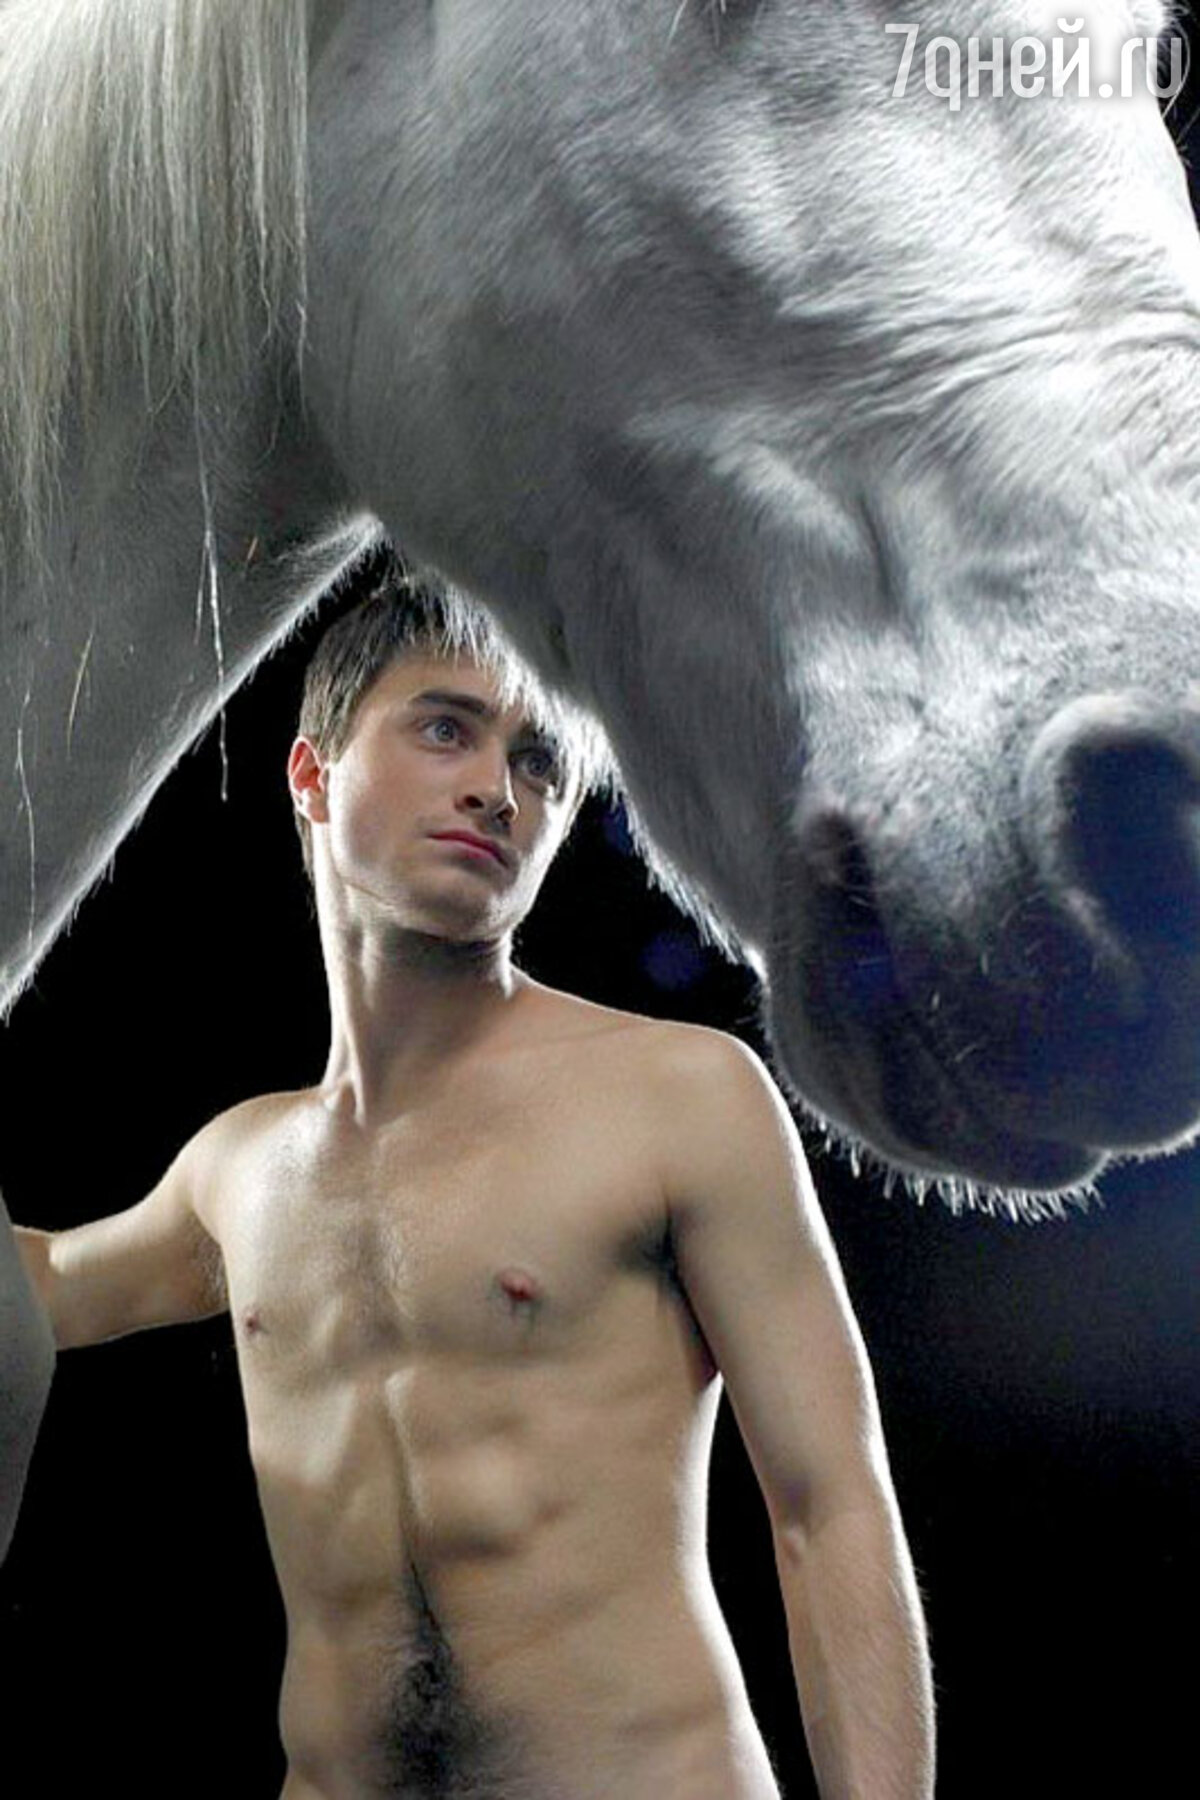 Дэниел Рэдклифф голым дебютирует в театре - в пьесе об эротических отношениях с лошадьми